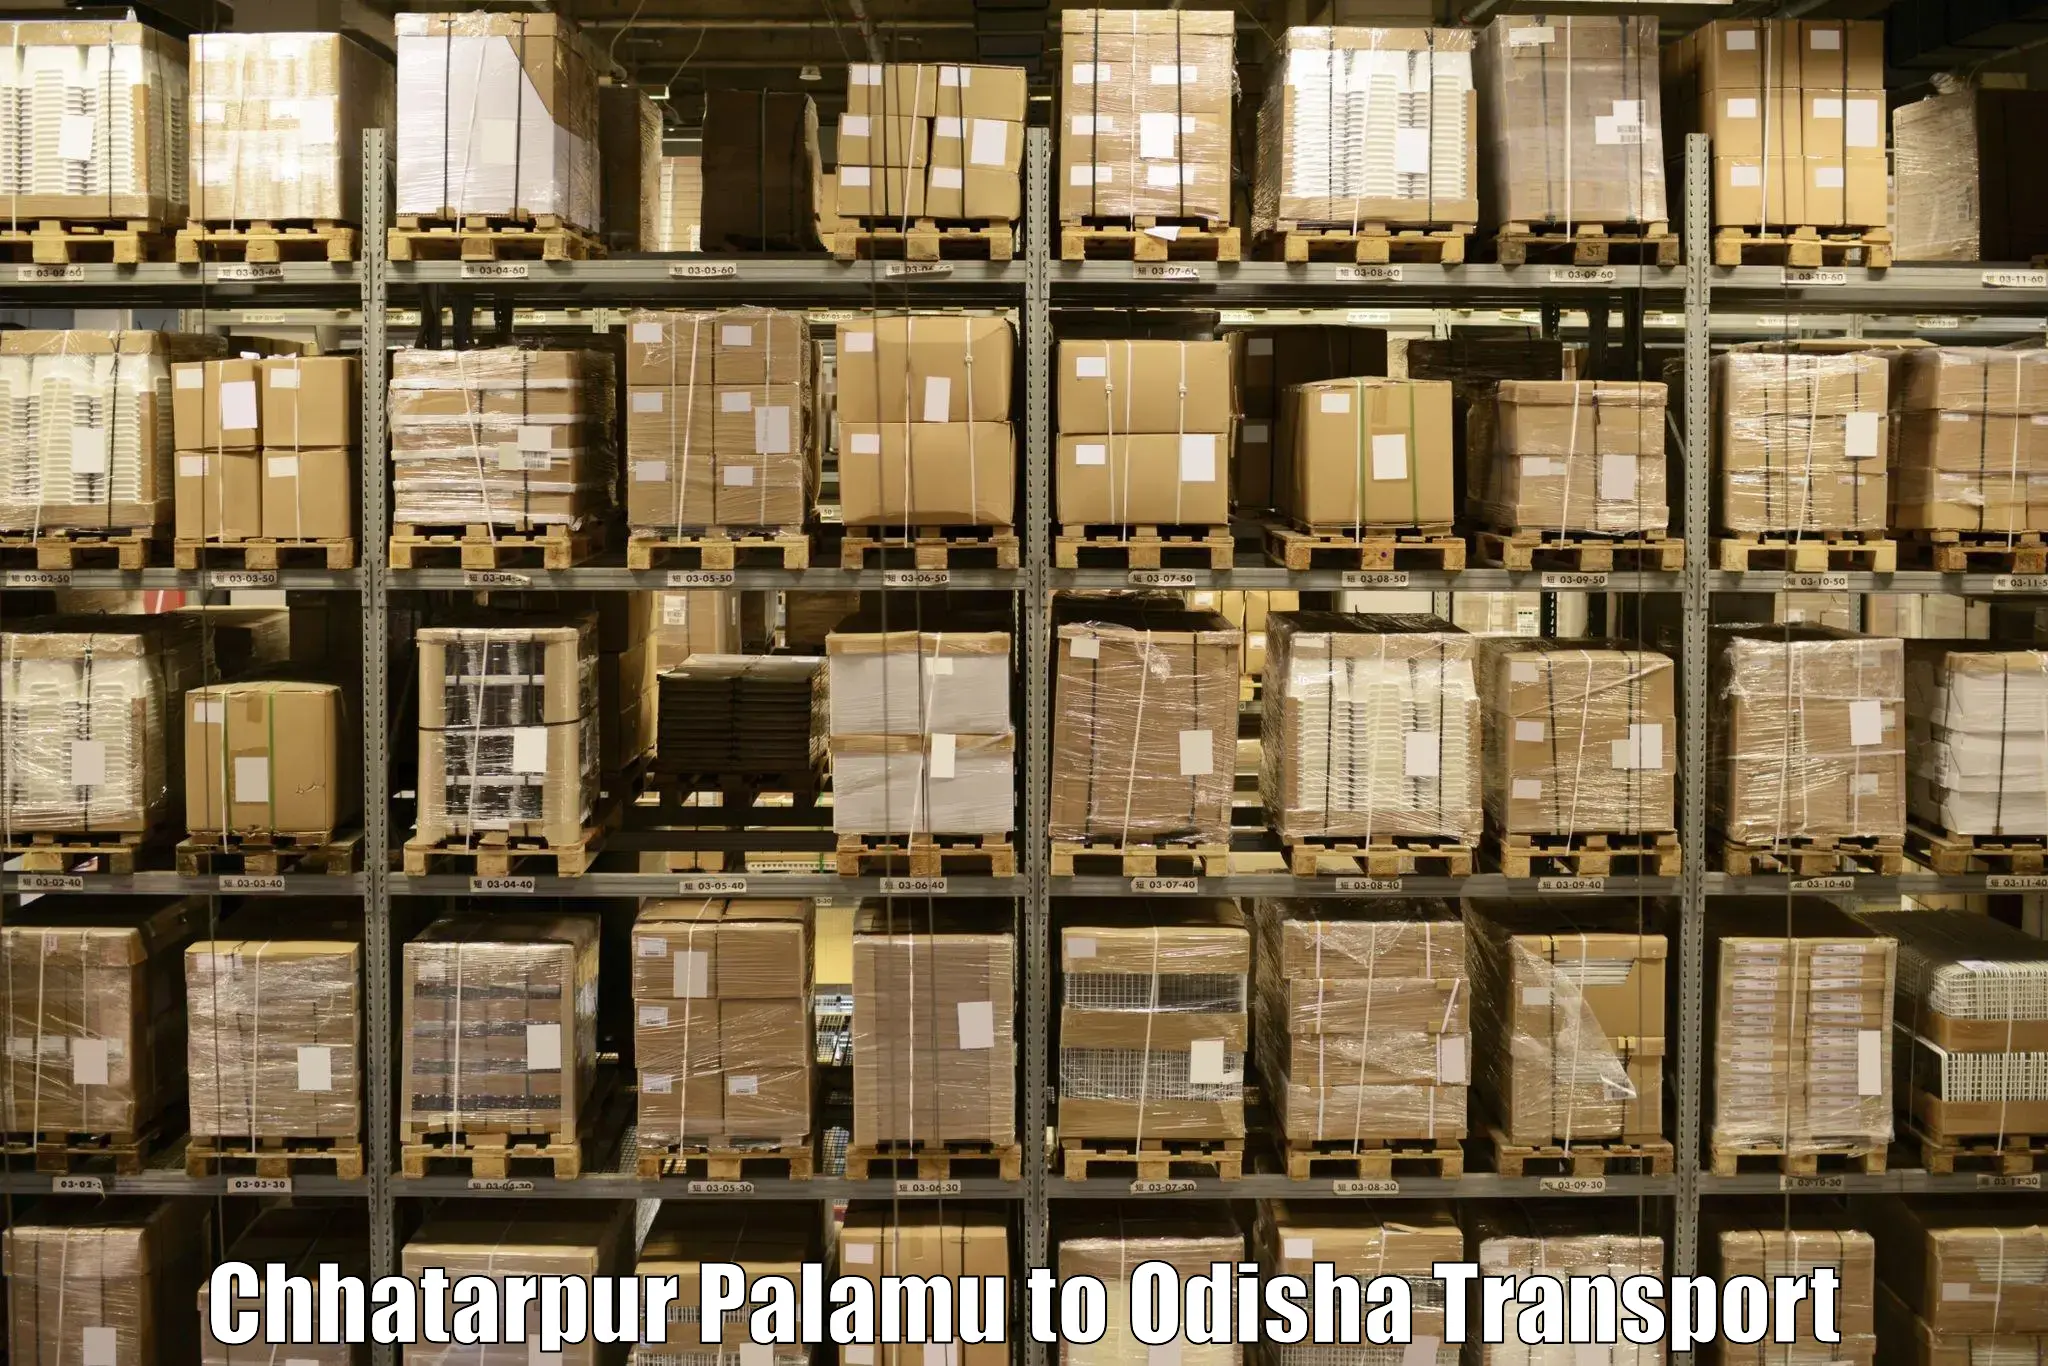 Daily transport service Chhatarpur Palamu to Nirakarpur